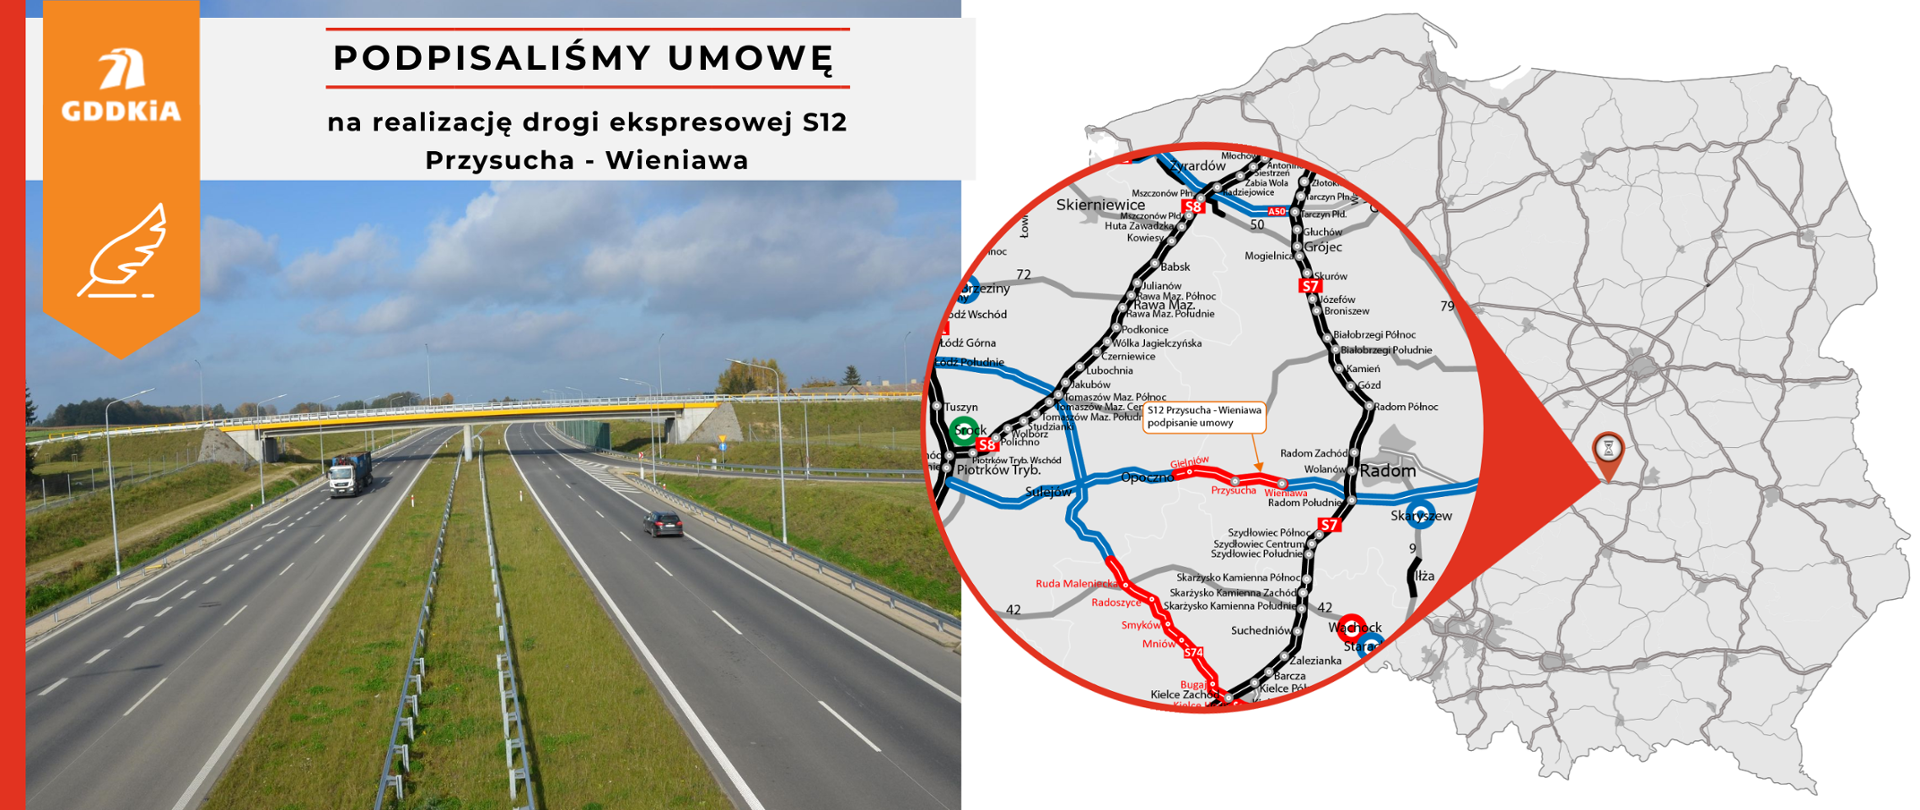 Grafika informująca o podpisaniu mowy na realizację drogi ekspresowej S12 na odcinku Przysucha - Wieniawa. Po prawej mapa Polski z zaznaczonym odcinkiem drogi ekspresowej. Po prawej zdjęcie poglądowe drowi ekspresowej. Dwujezdniowa droga po dwa pasy ruchu w obu kierunkach. Nad drogą przechodzi wiadukt.